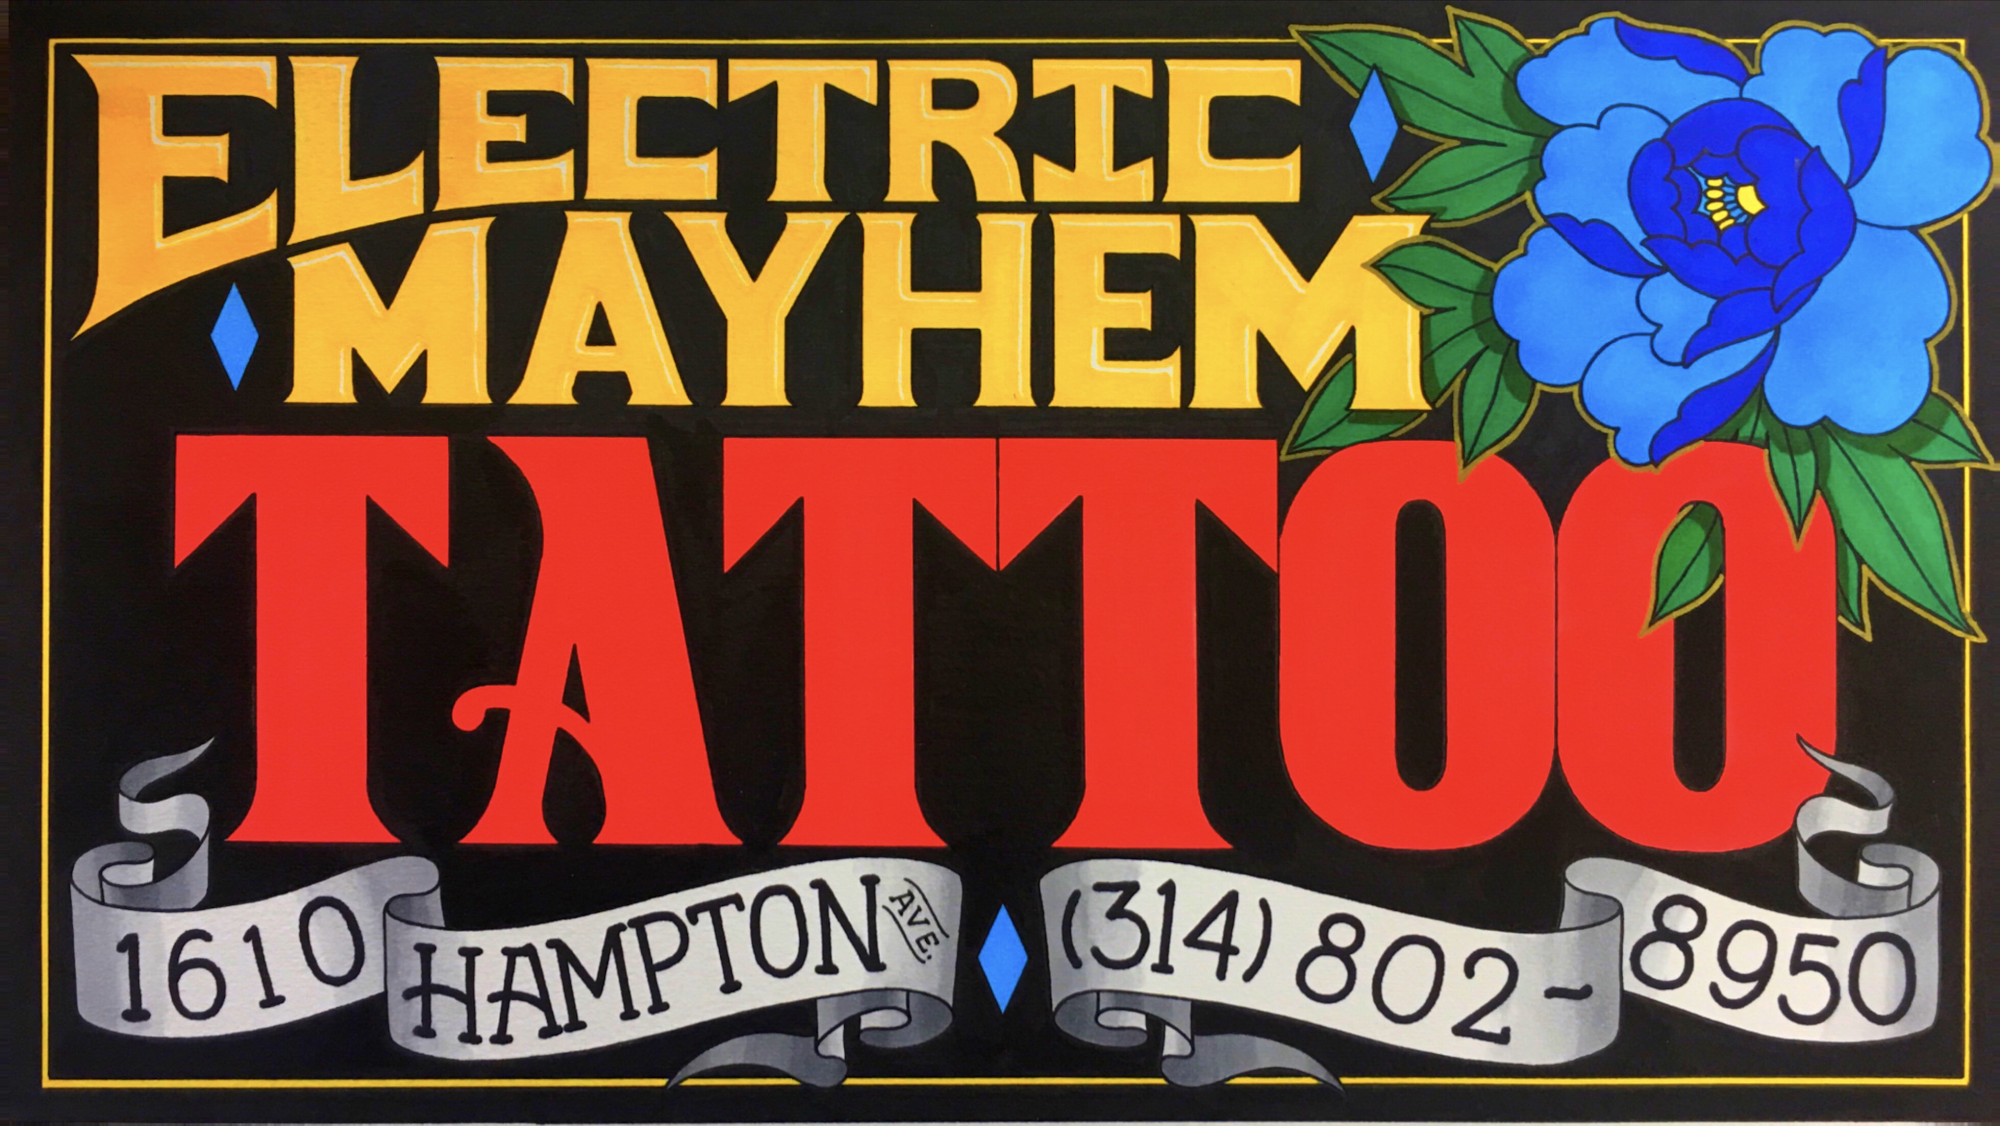 Electric Mayhem Tattoo